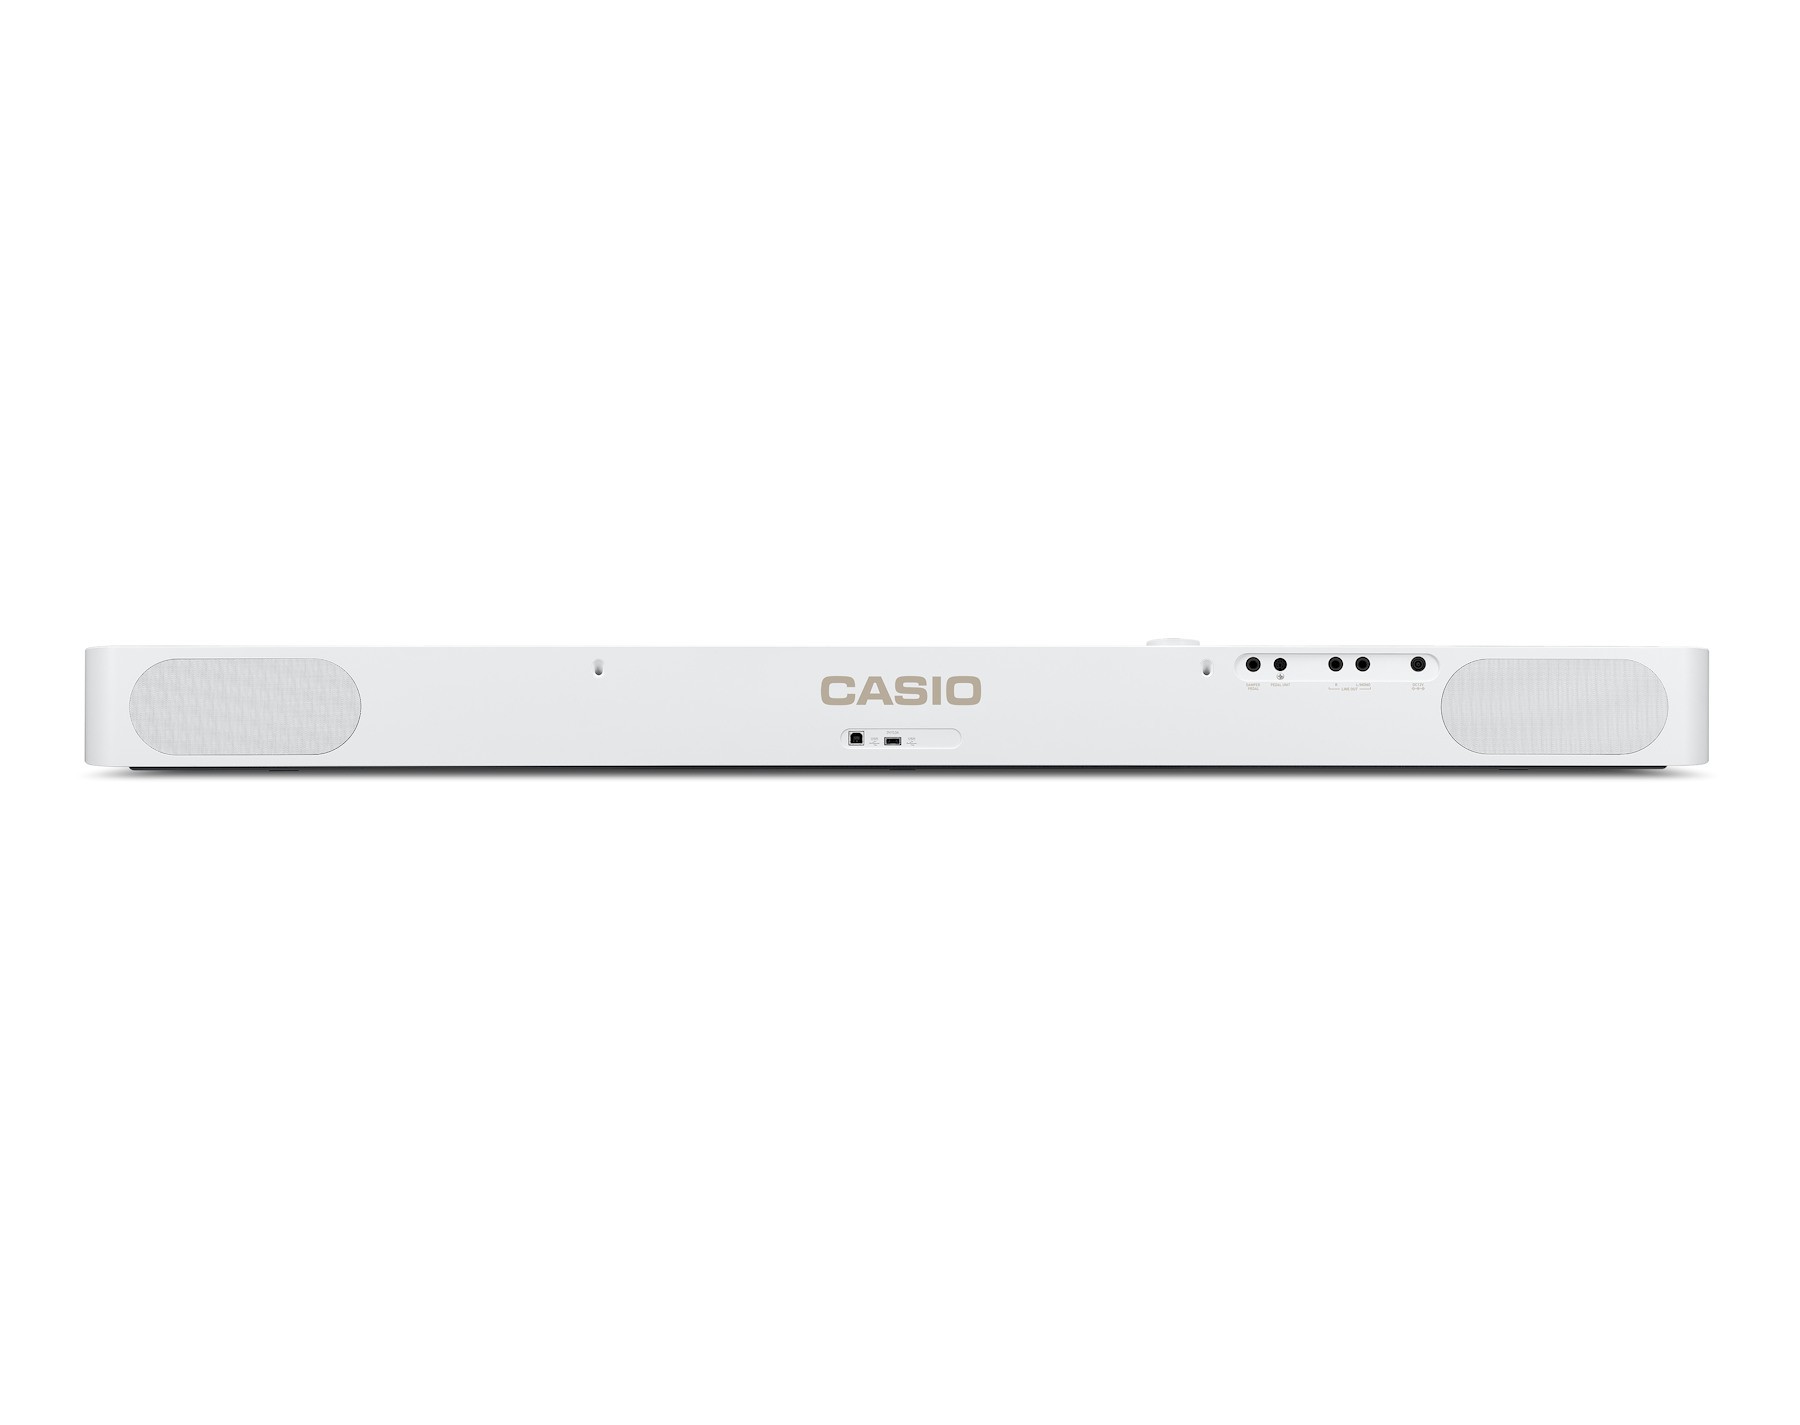 Casio PX-S1100 Privia Digital Piano White